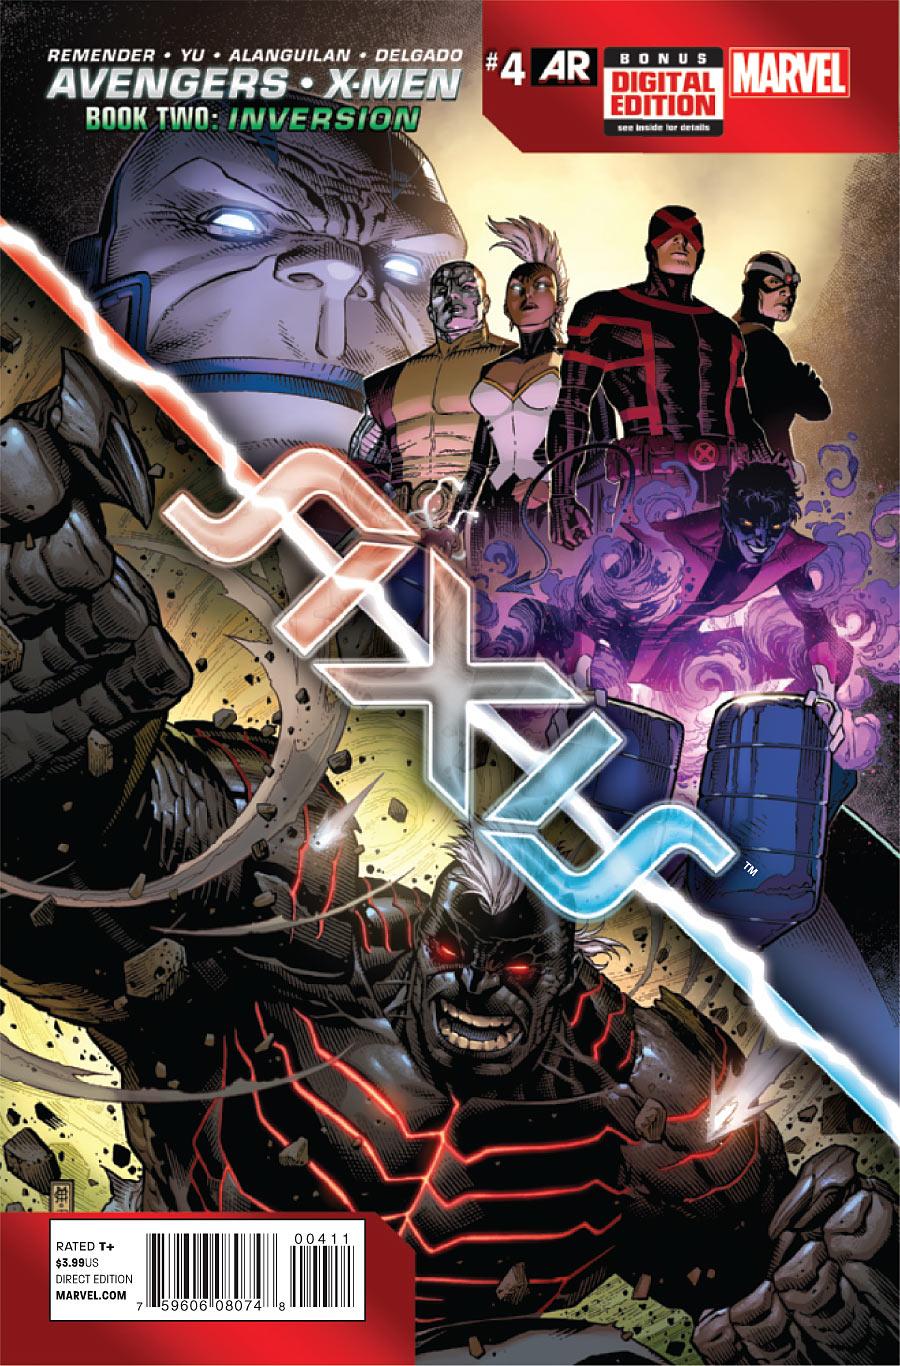 Avengers & X-Men: AXIS Vol. 1 #4